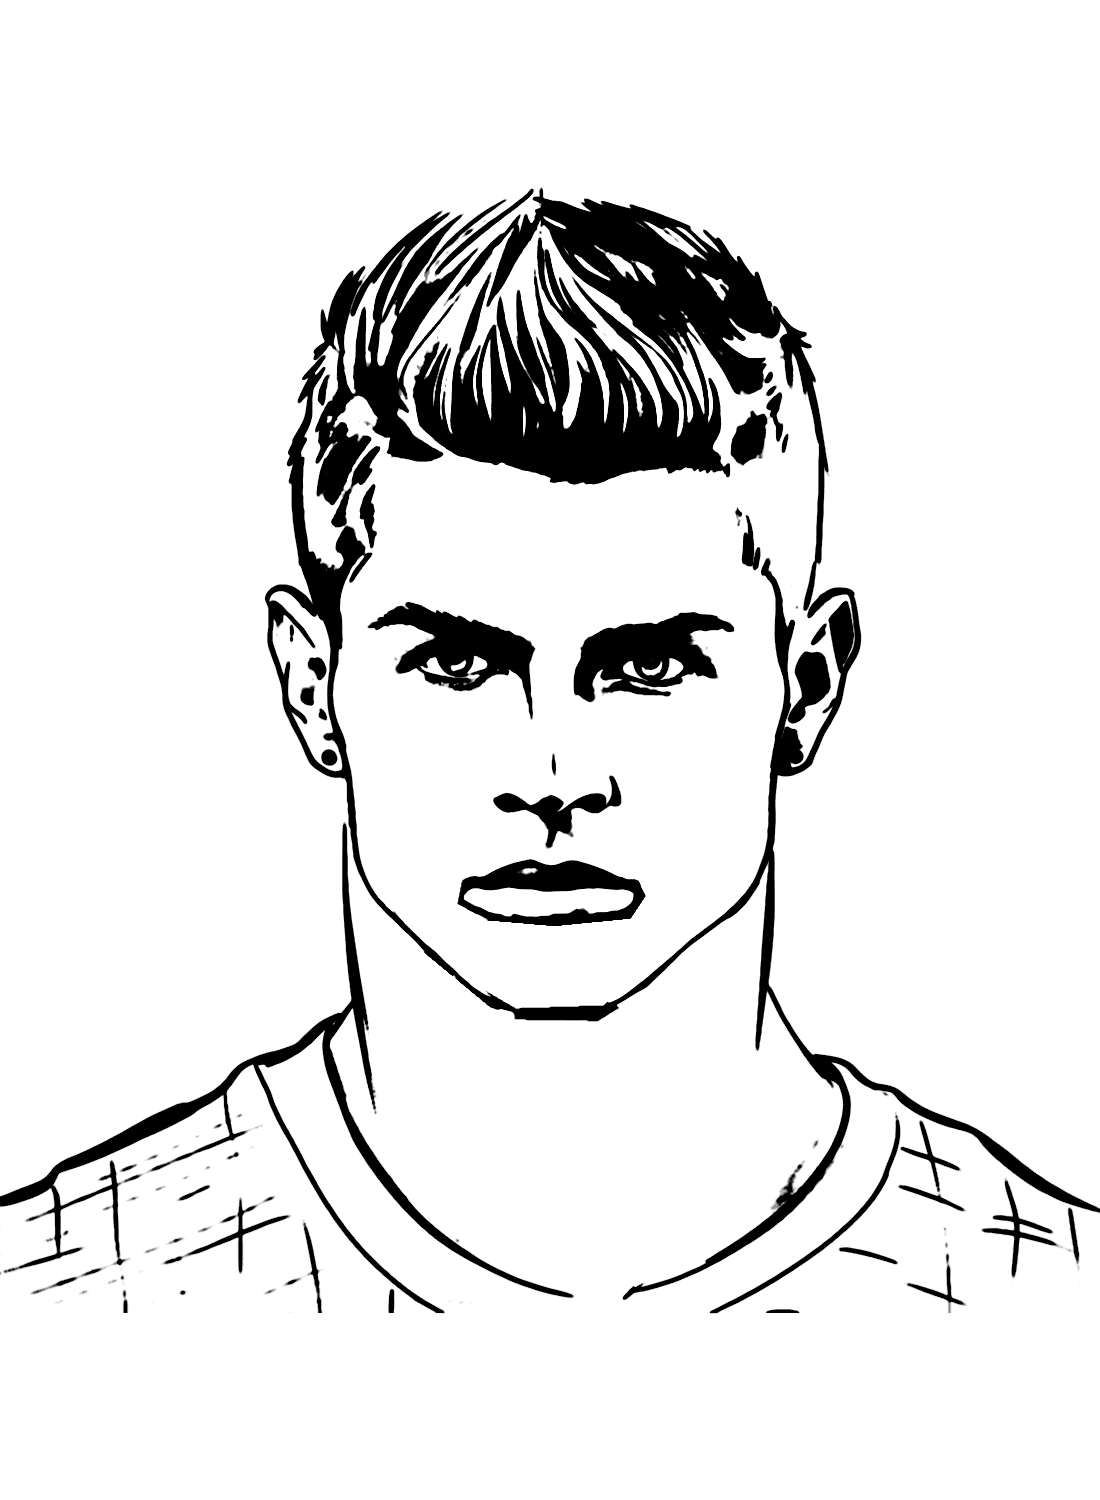 Cristiano Ronaldo Portrait Art - Pencil Portrait Art | OpenSea